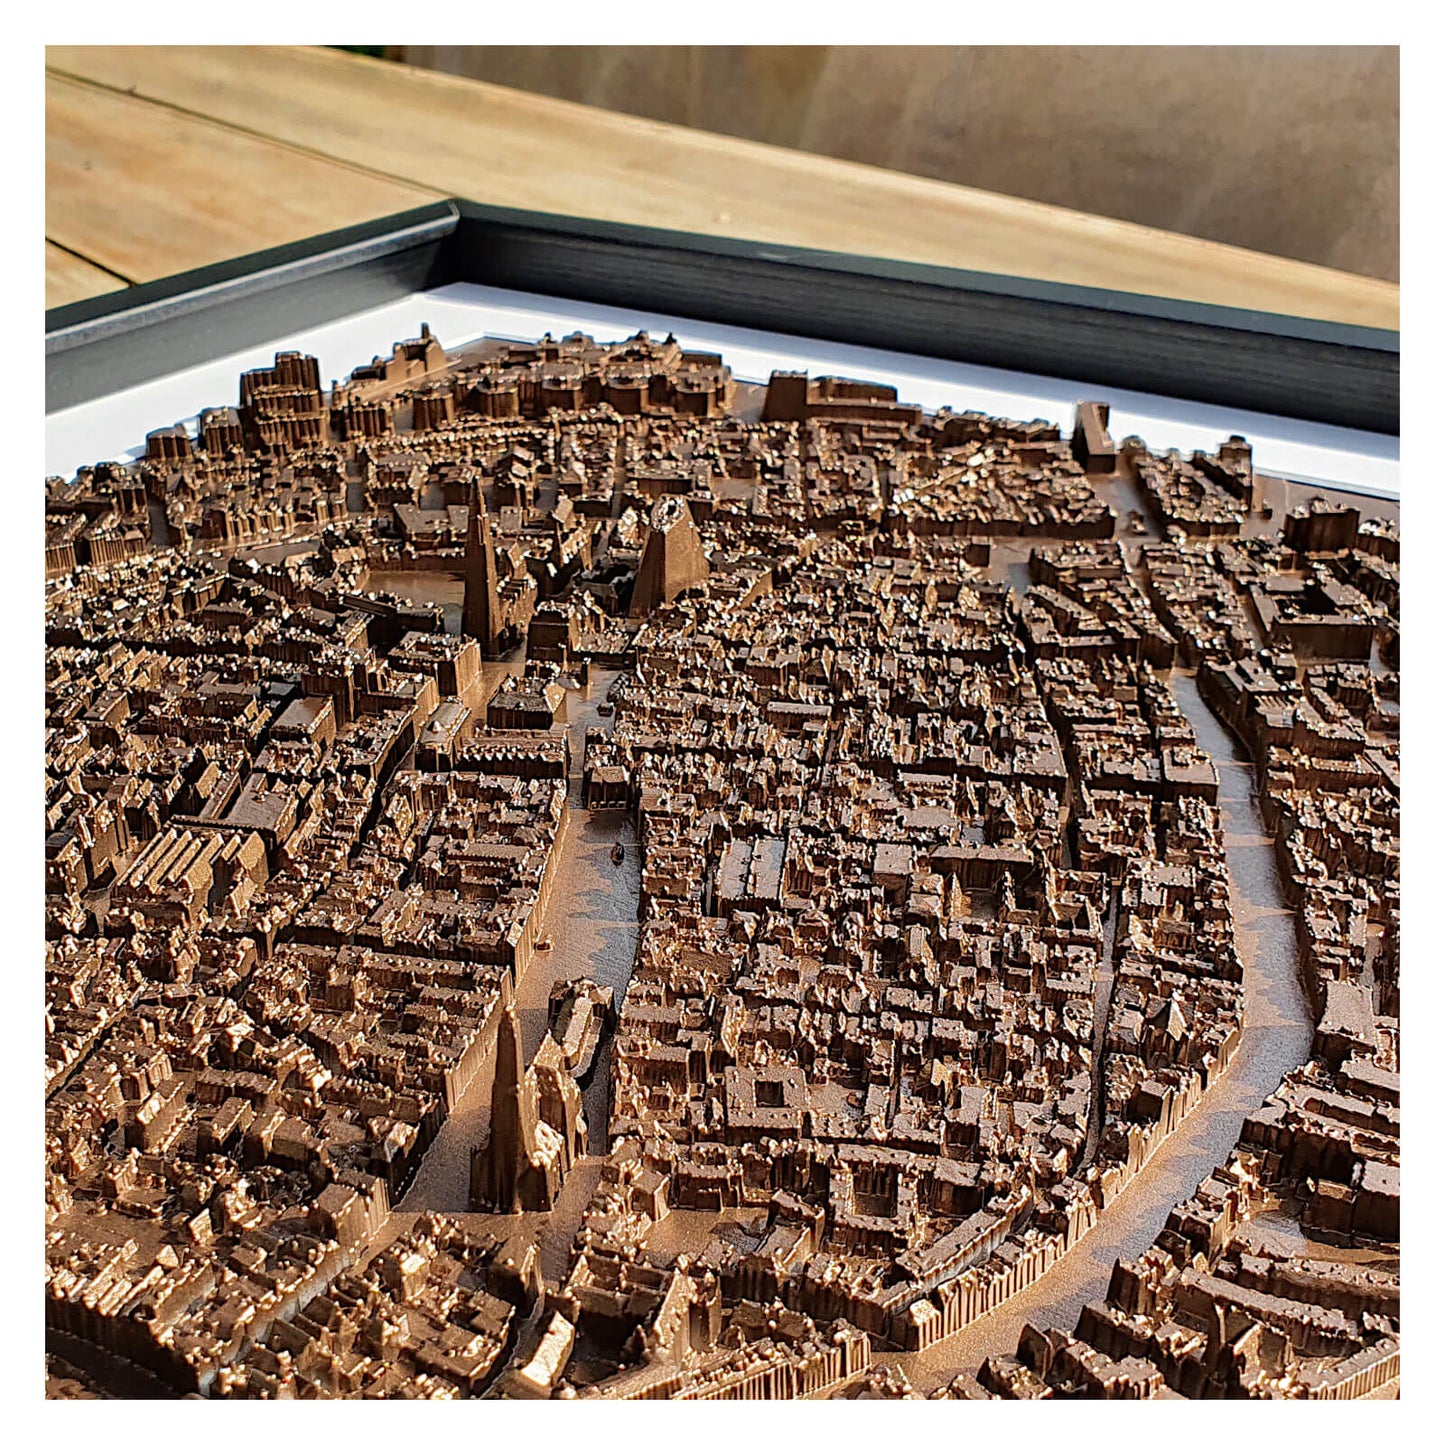 Miniatuur stadsmodel Groningen - close-up van 3D wanddecoratie